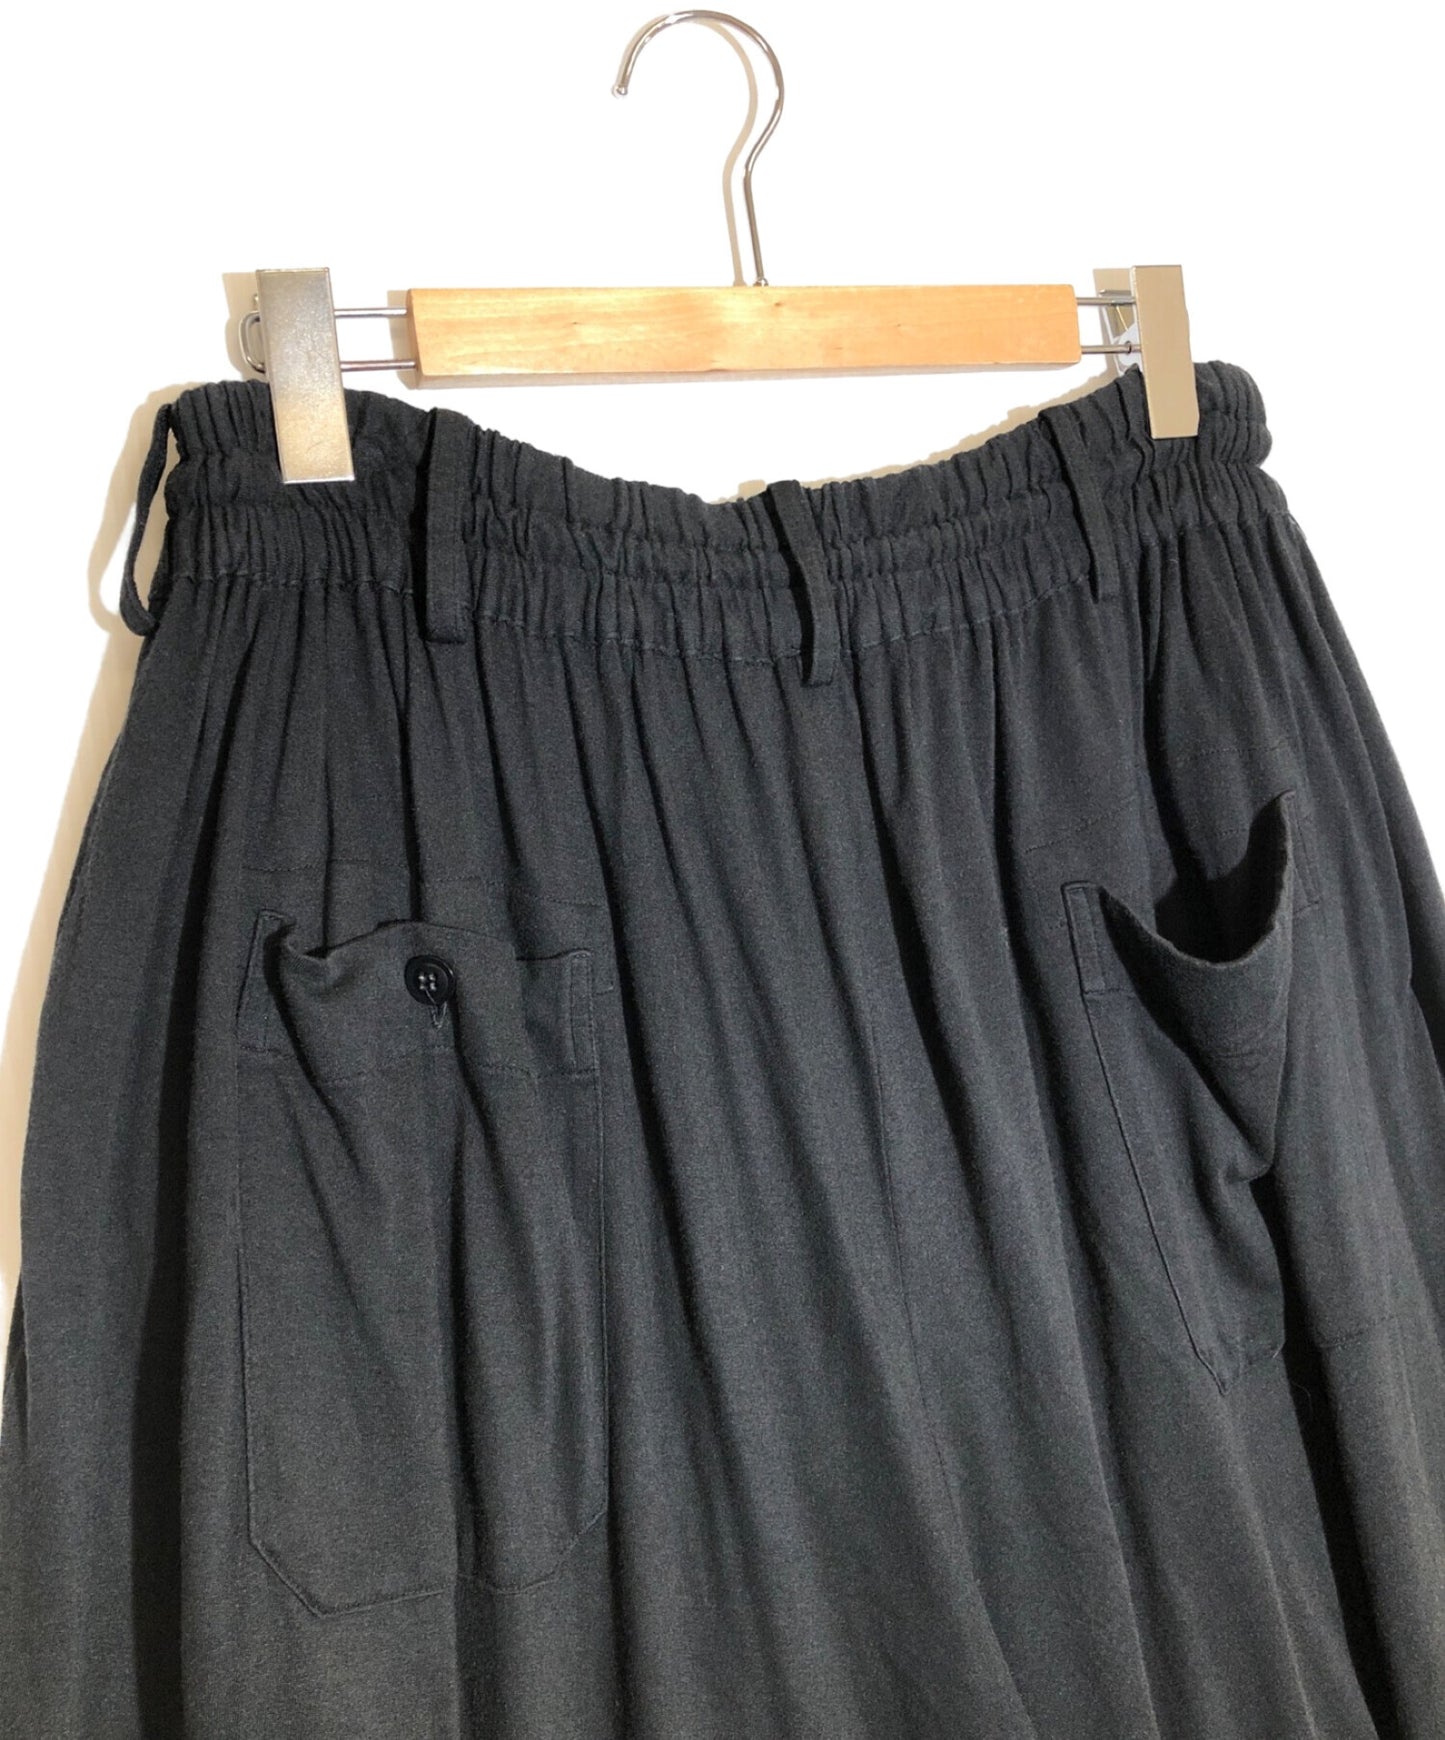 S'yte yohji yamamoto cotton rayon jersey culotte pants u0-p23-208